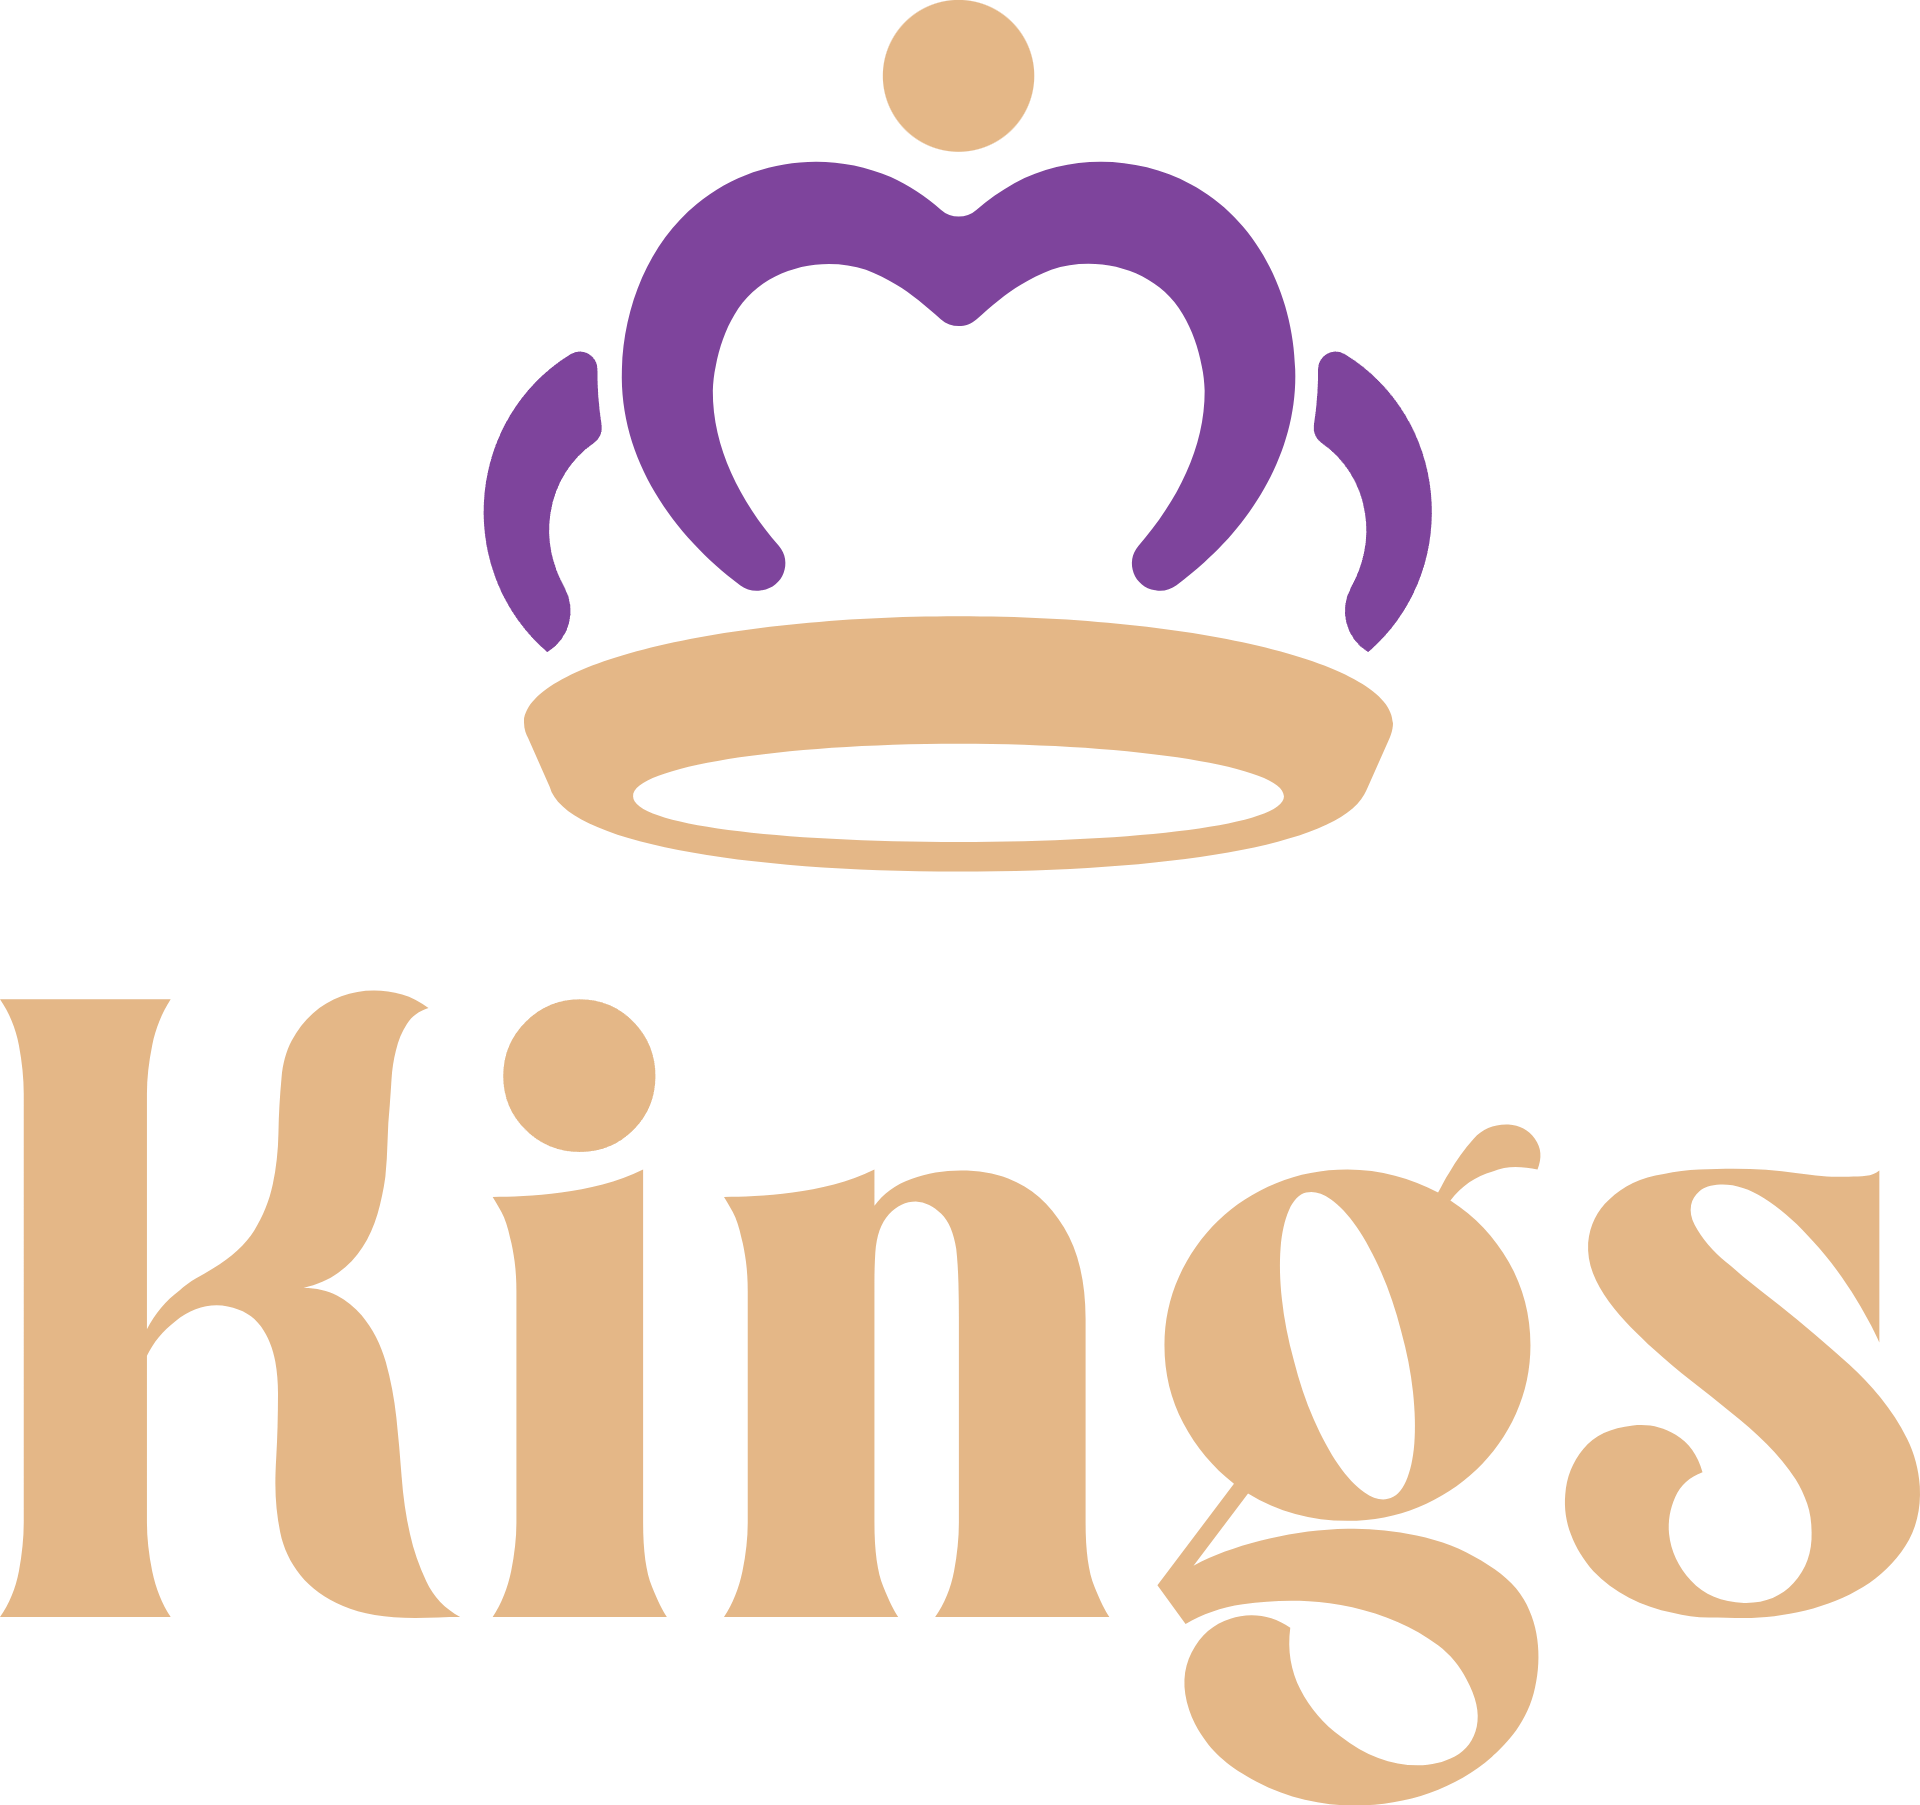 Kings v novém rouchu! Nové logo, nové barvy, oplavdové klálovství!